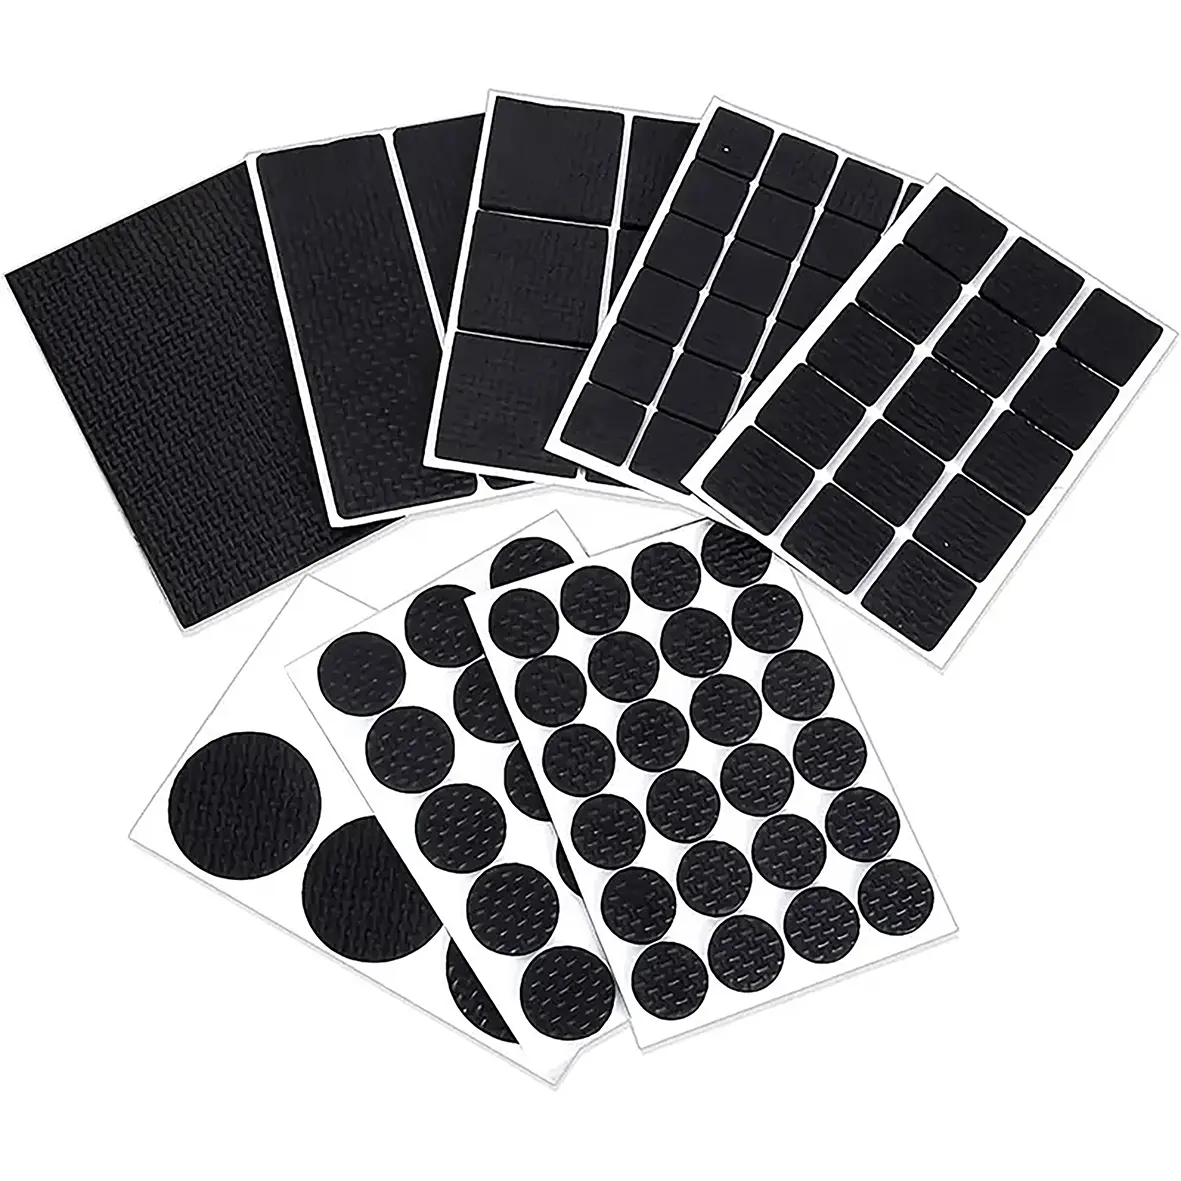 Coussinets en caoutchouc de silicone EVA auto-adhésifs noirs résistants à la chaleur et à la friction Joint de coussinets adhésifs carrés ronds et plats